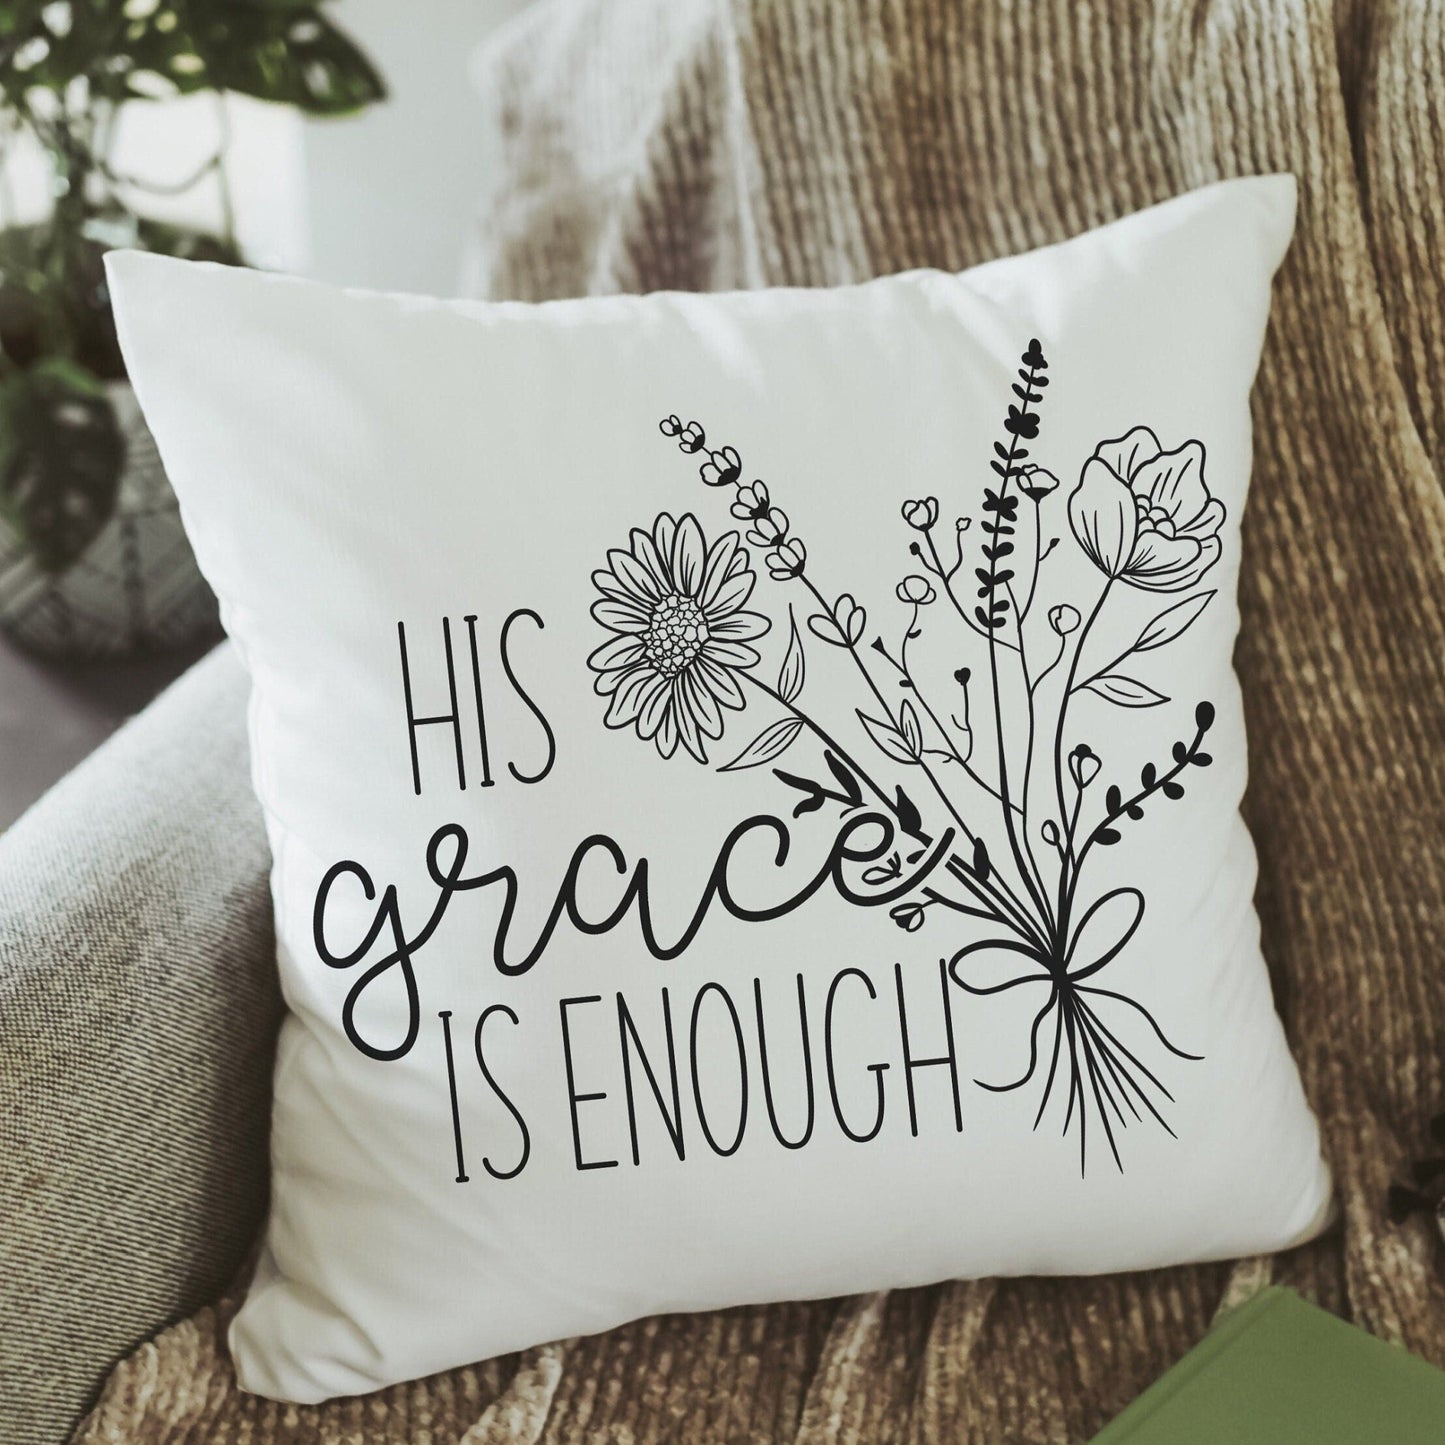 his grace is enough 2 Corinthians 12 9 scripture pillows